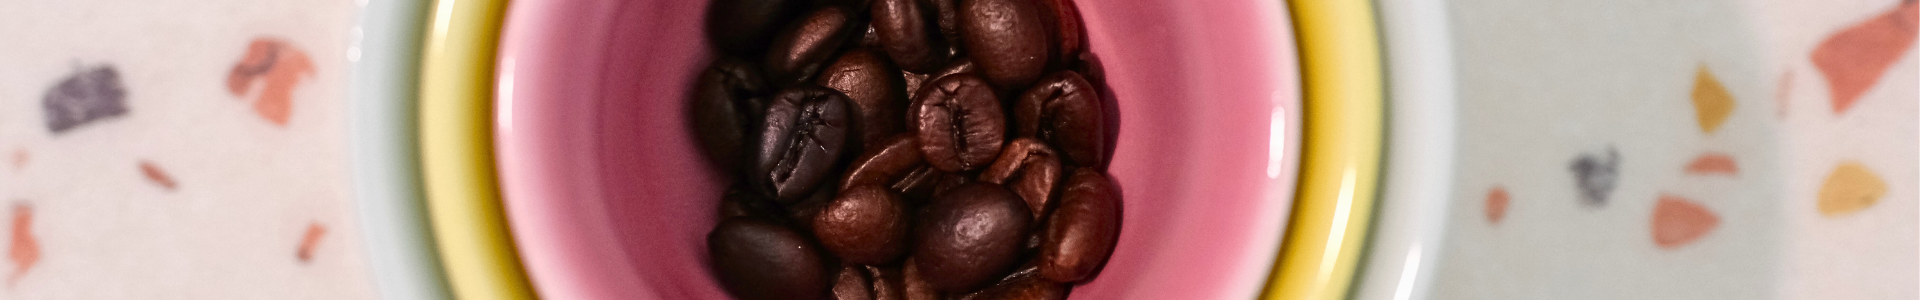 Ineinander gestapelte bunte Kaffeetassen mit Kaffeebohnen-Inhalt